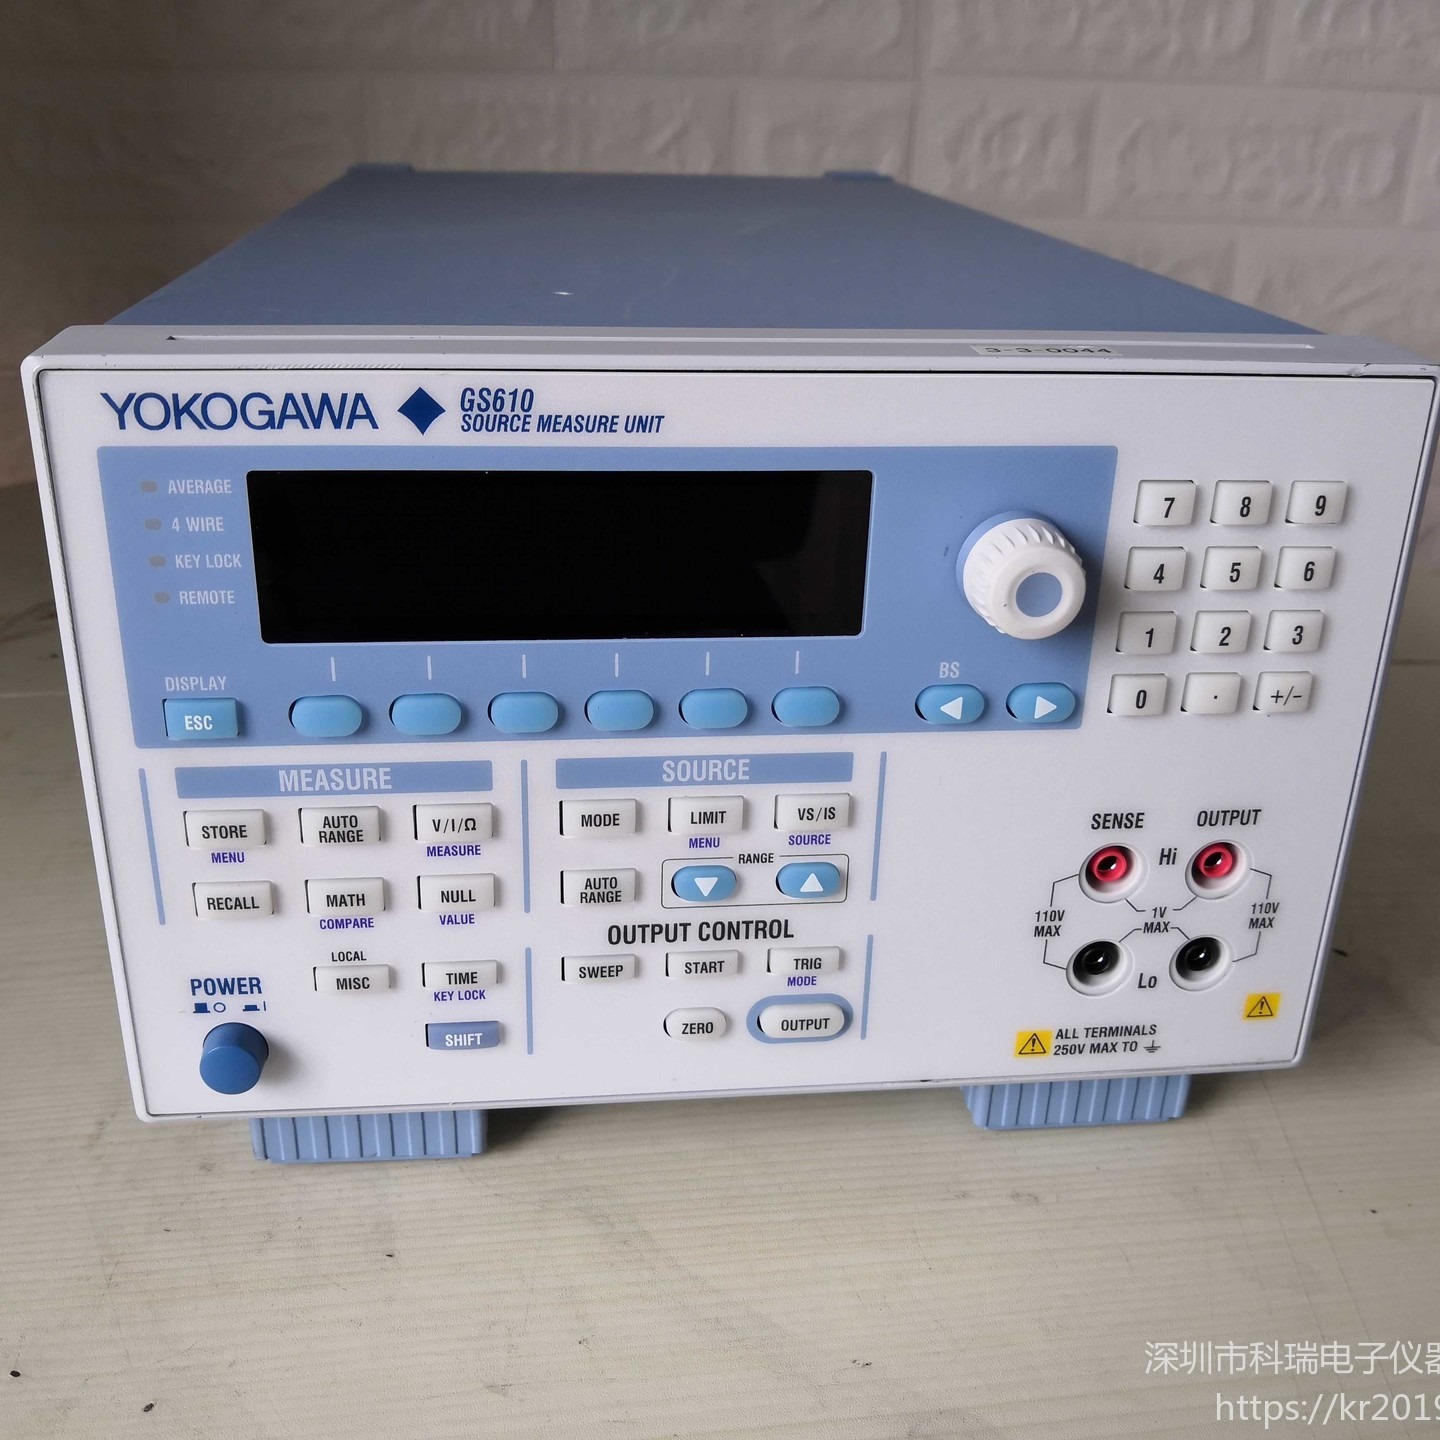 出售/回收 横河Yokogawa GS610 信号源测量单位 现货销售